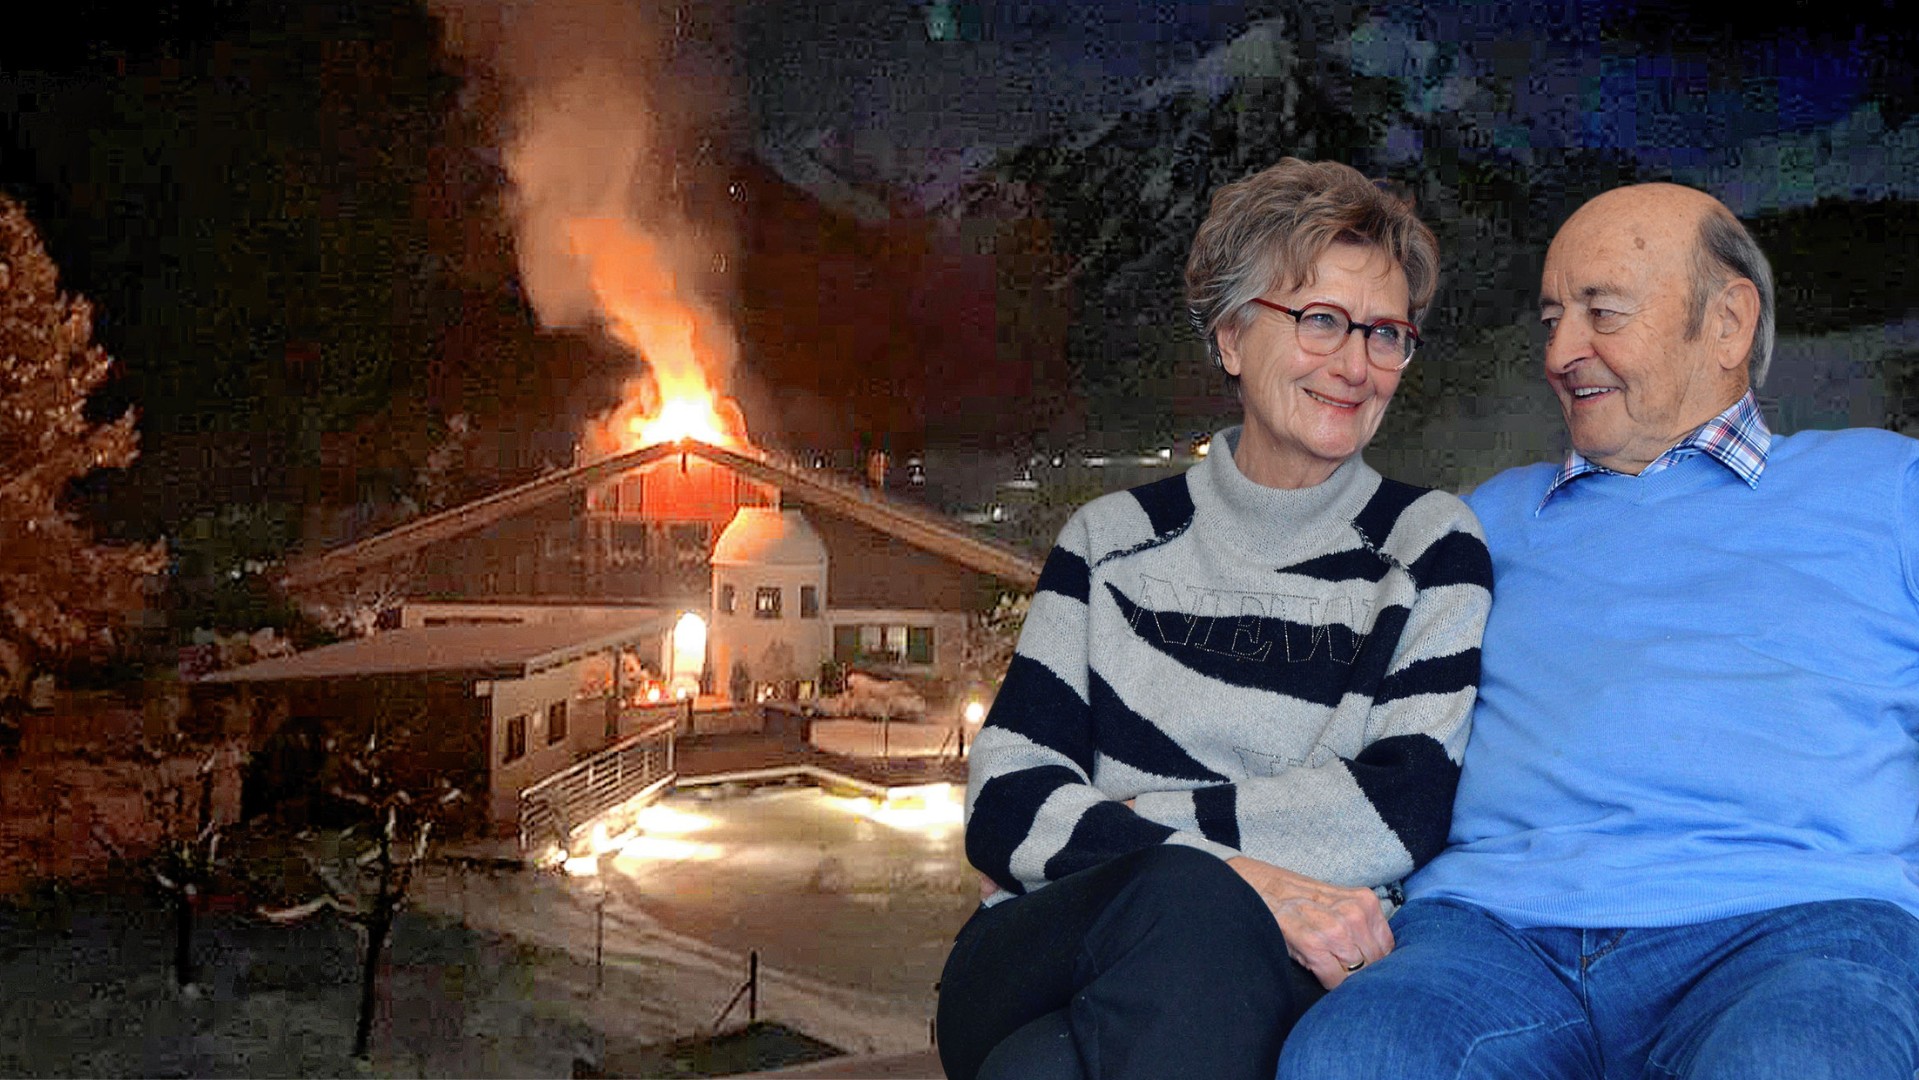 Über den Dachfirst hinaus loderte am 12. Dezember das Feuer. Ute und Herbert Baldauf können Weihnachten wieder daheim feiern. (Bild: zoom.tirol)